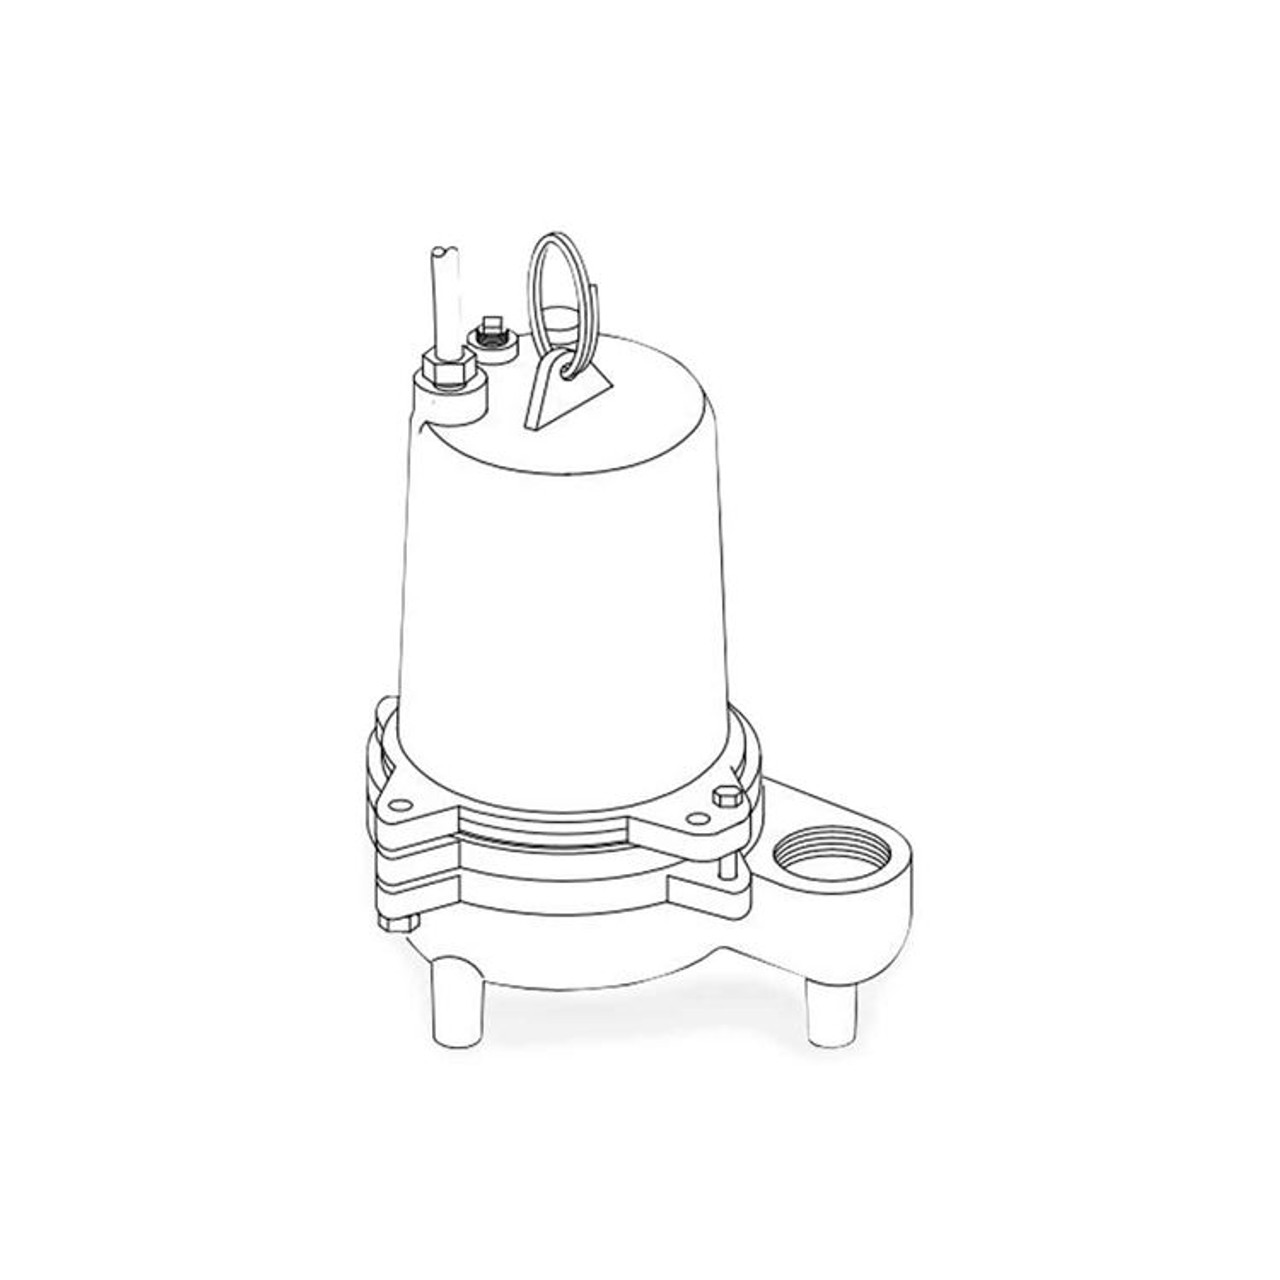 Barnes SE411 Submersible Sewage Ejector Pump 0.4 HP 115V 1PH 15' Cord Manual